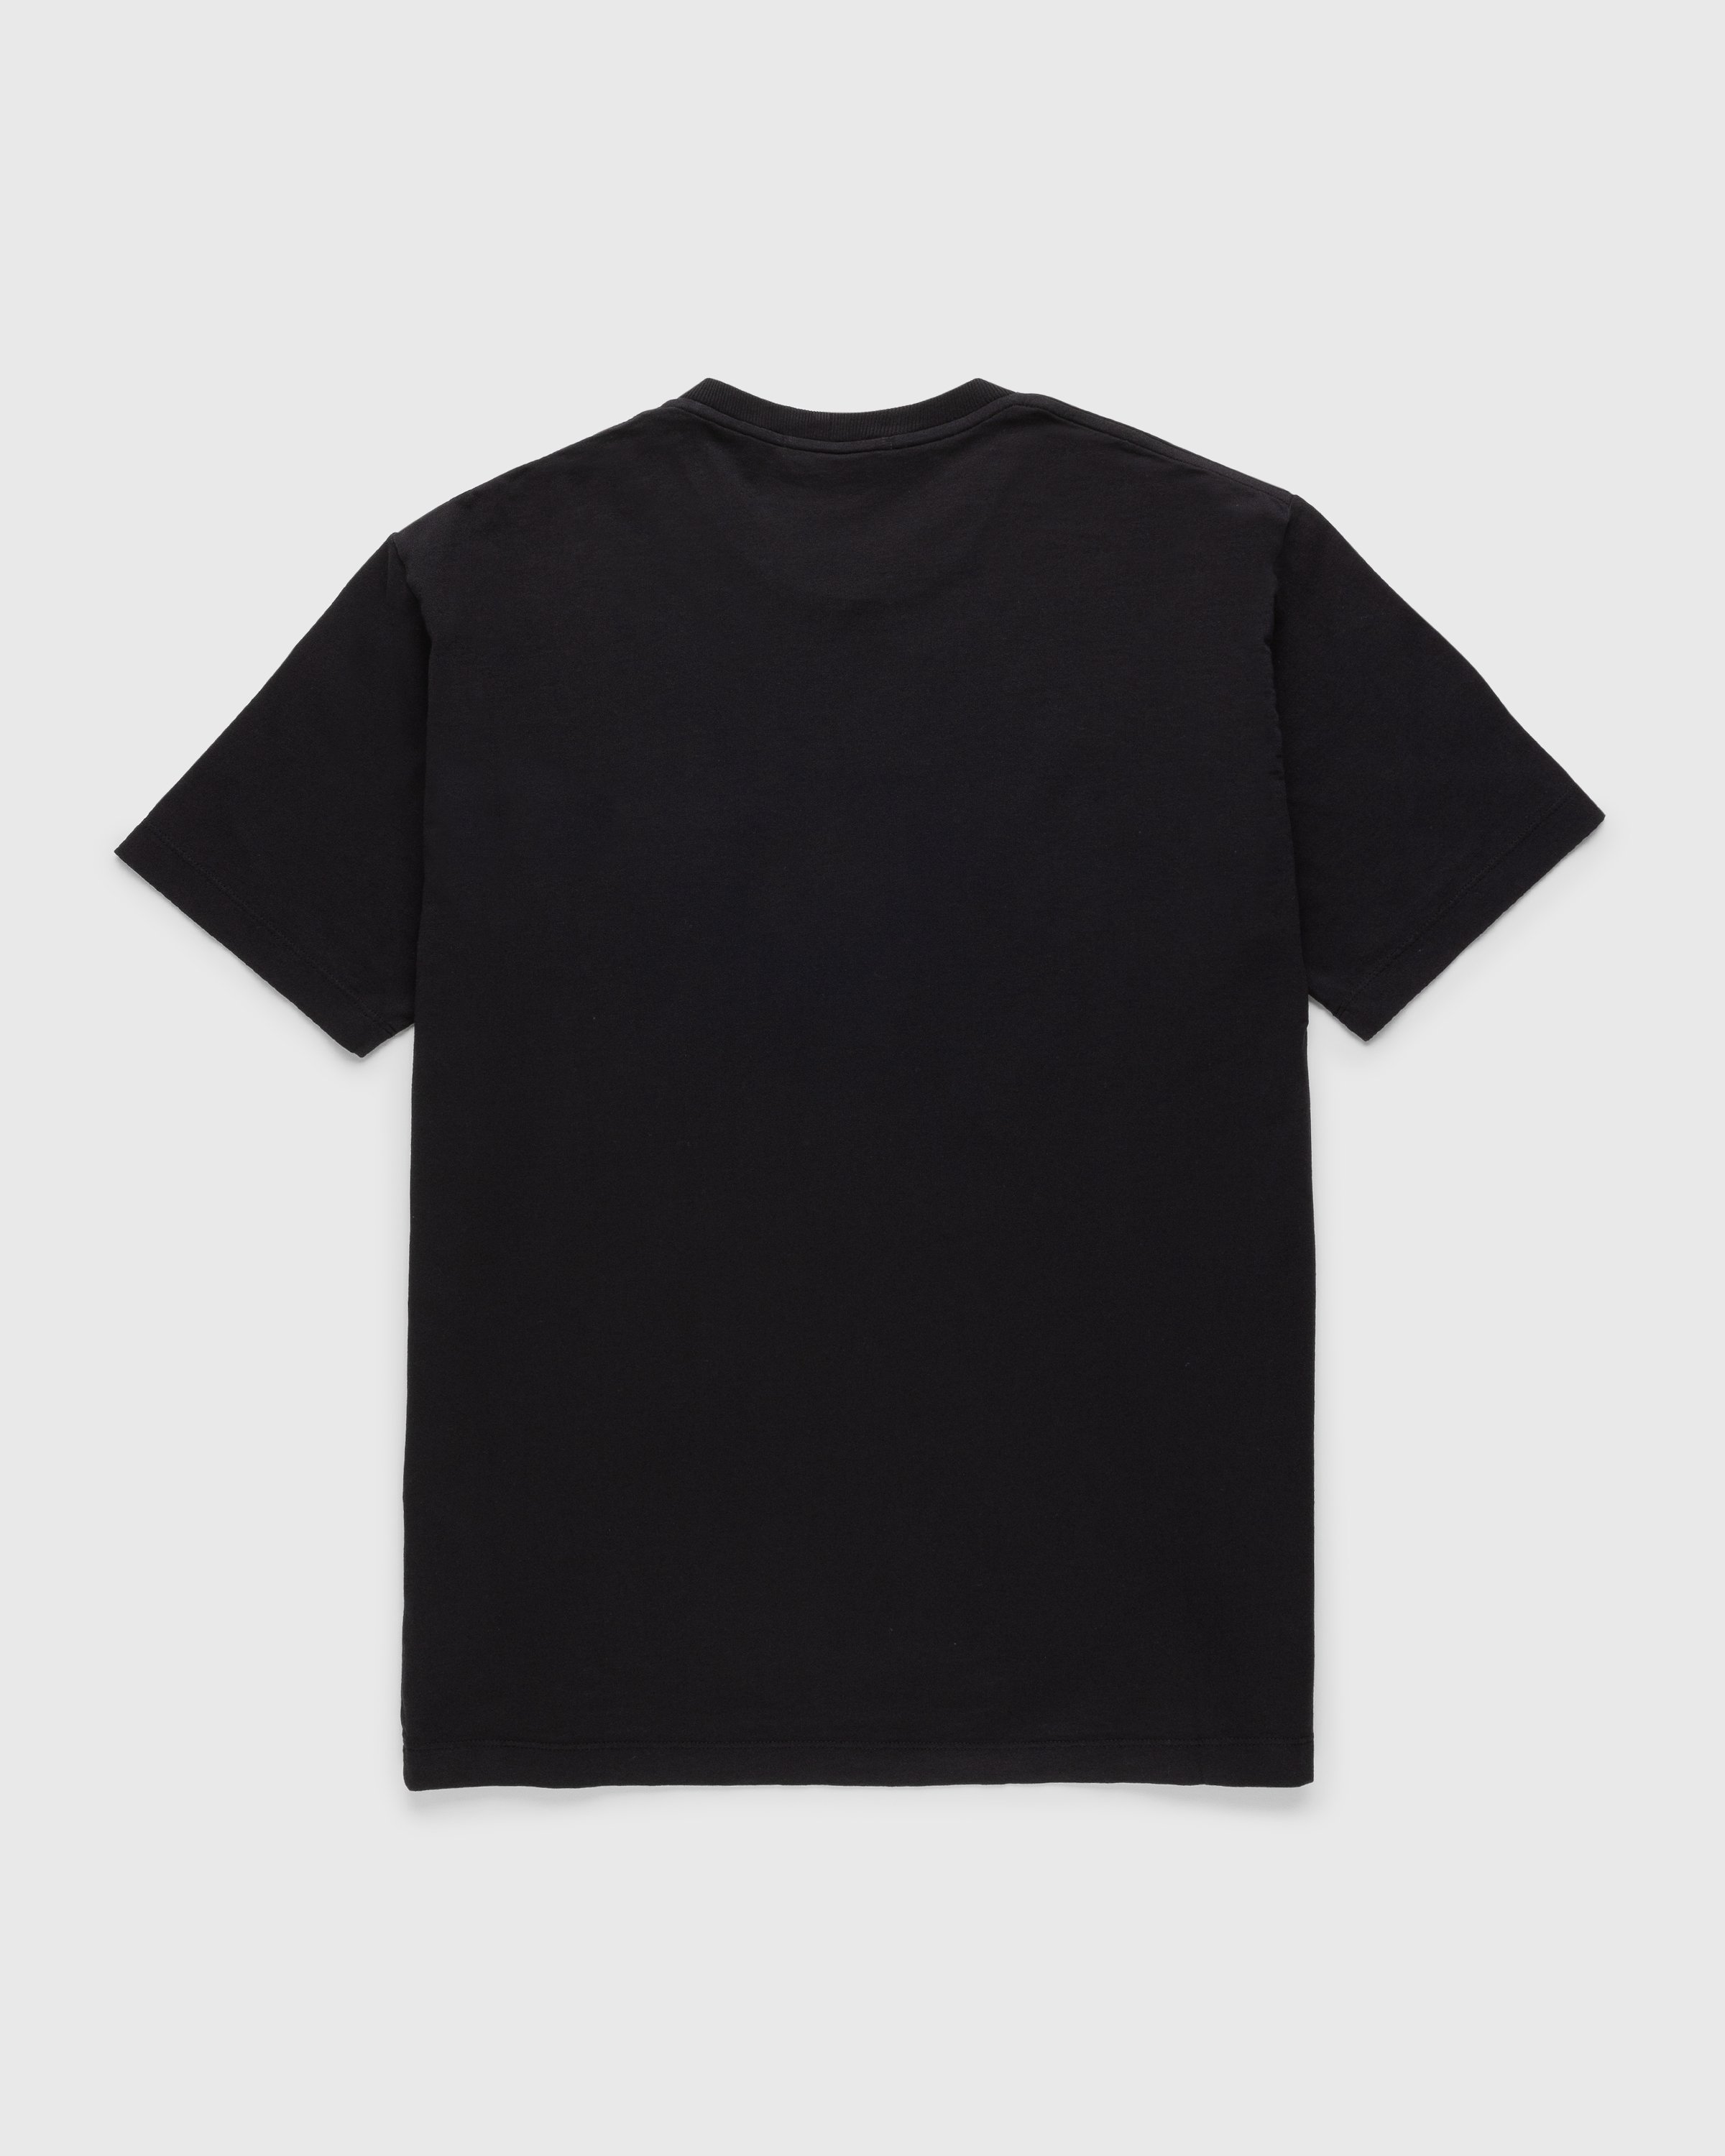 Stone Island - Compass Logo T-Shirt Black - Clothing - Black - Image 2